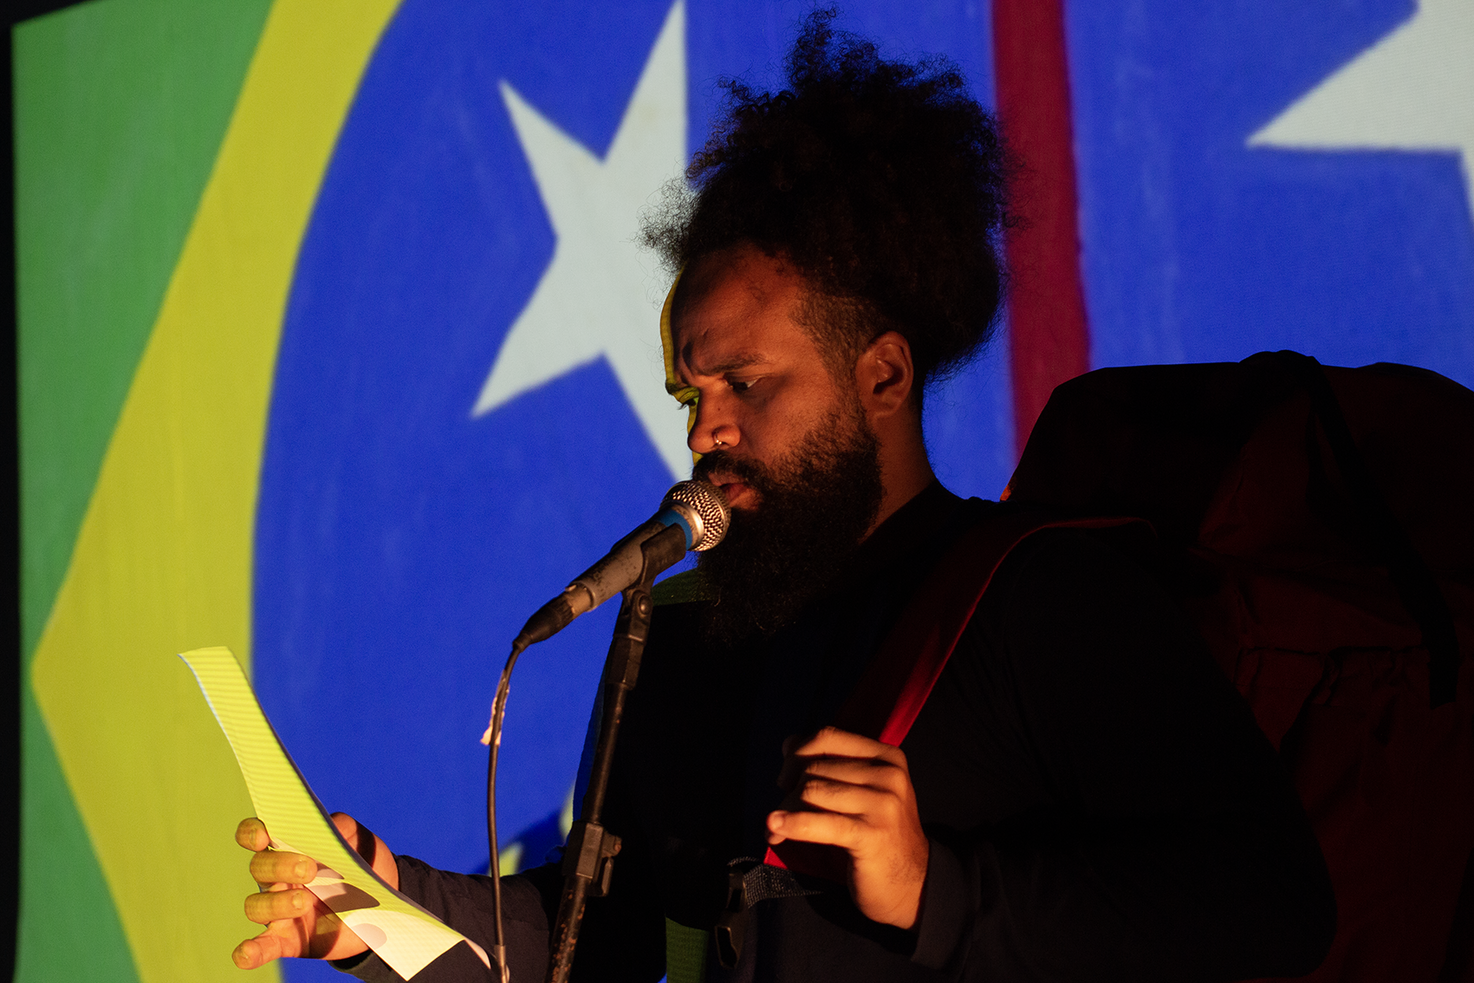 Fotografie von Wellington Gadelha vor einer Brasilianischen Flagge. Er spricht in ein Mikrofon.